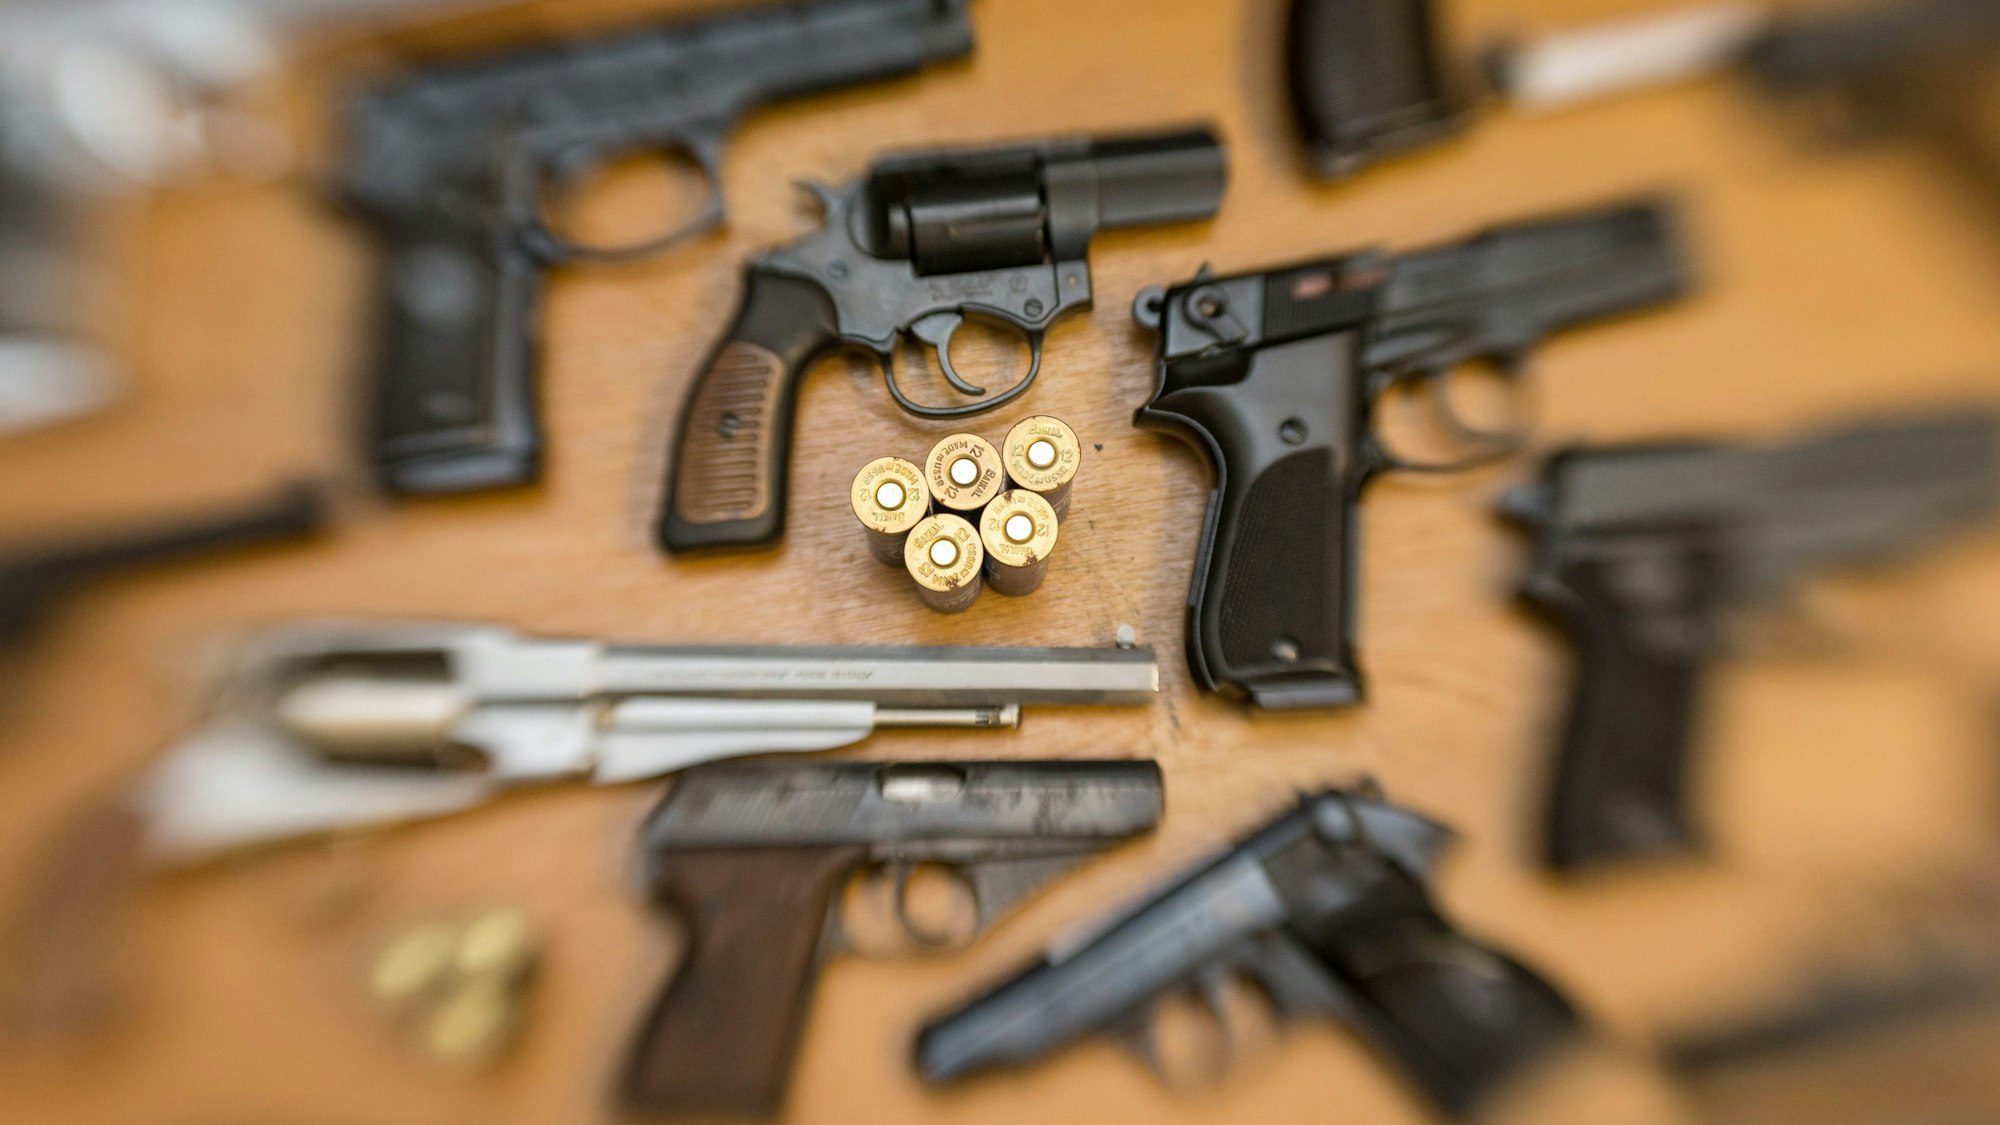 Pistolen und Revolver und Munition liegen auf einem Tisch.